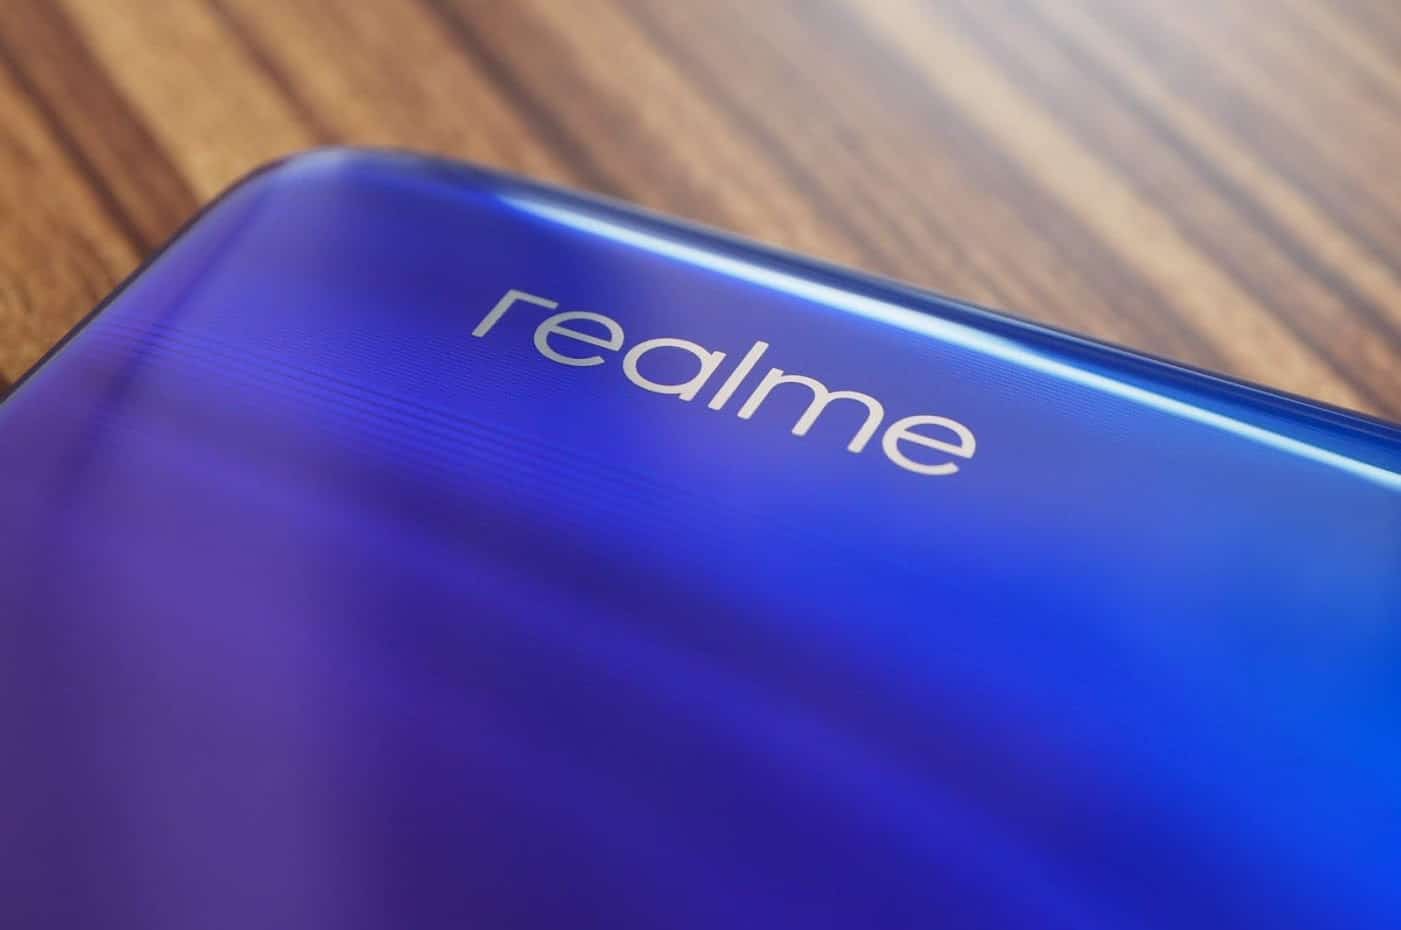 รีวิว Realme 3 Pro สเปกดีเกินราคา กล้องสวย เล่นเกมลื่นด้วย Snapdragon 710 17